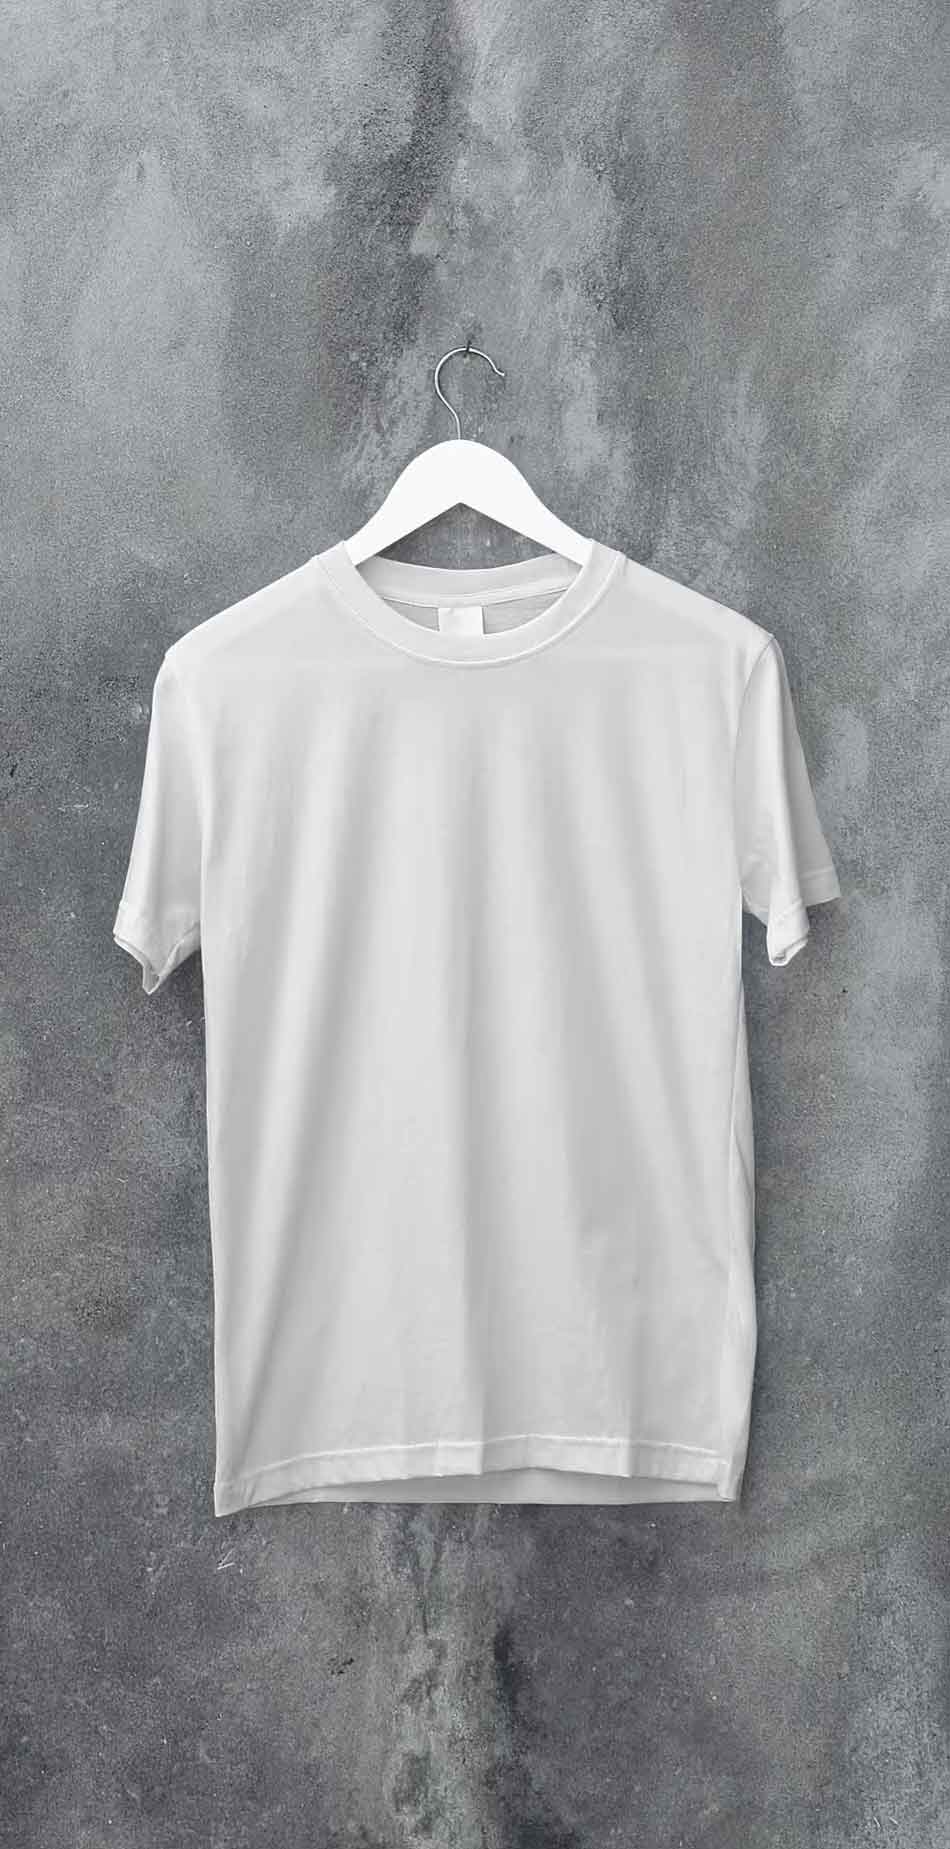 White Hanging T-Shirt Mockup